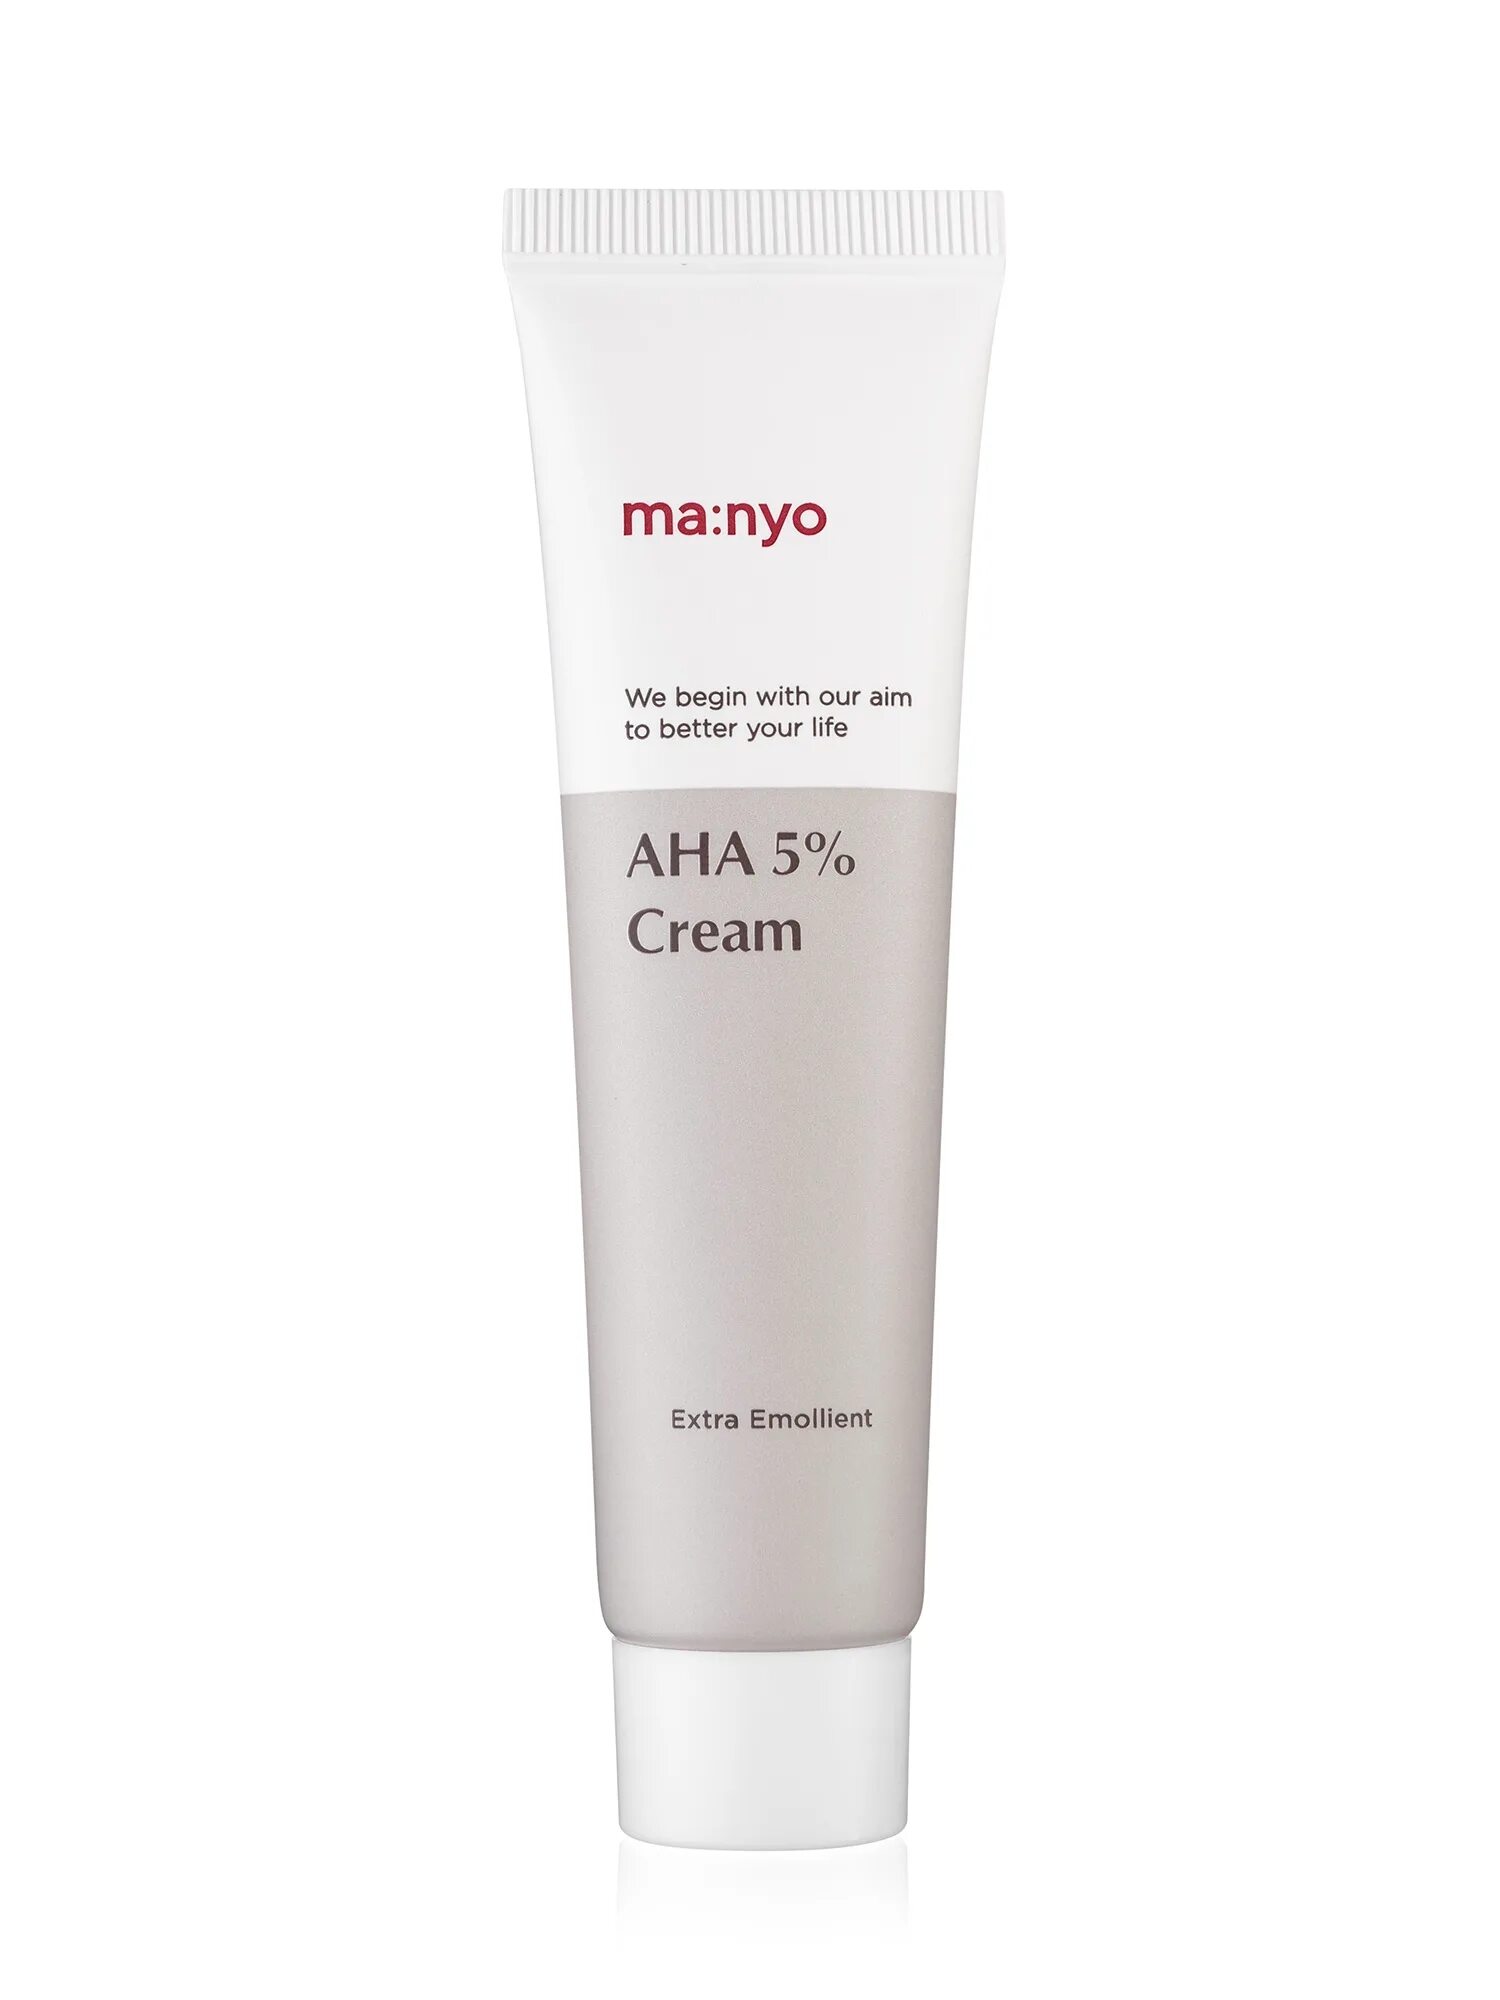 Ma:nyo Aha 5 Cream. Ma nyo крем. Manyo крем для лица. Manyo Factory крем с ана кислотами Blemish Lab Proxyl 5% Aha Cream.